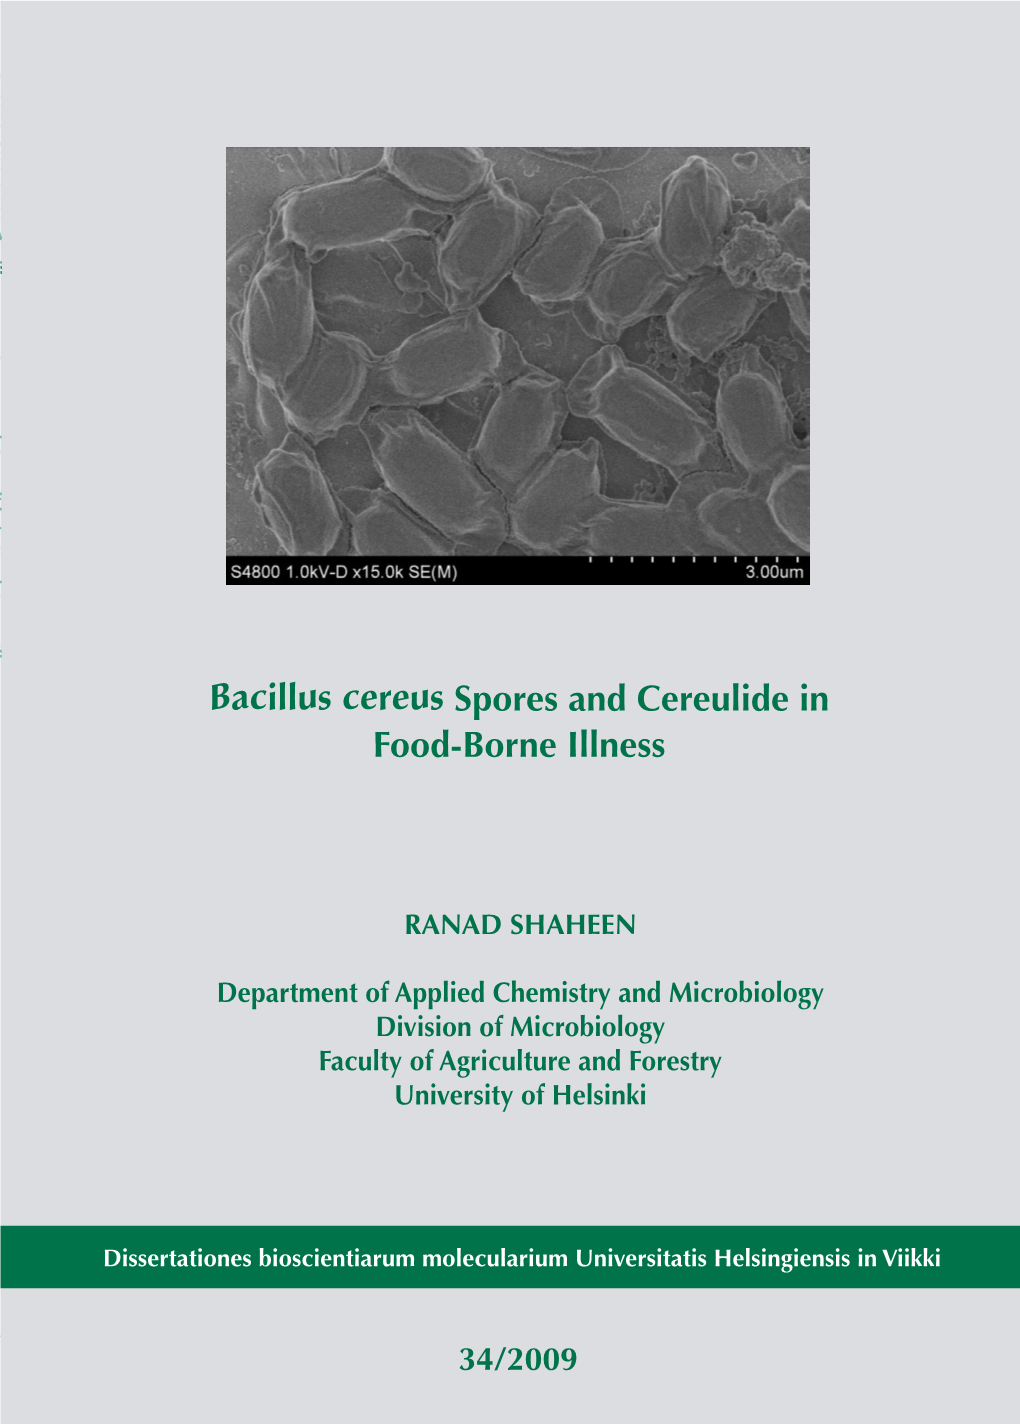 Bacillus Cereus Spores and Cereulide in Food-Borne Illness